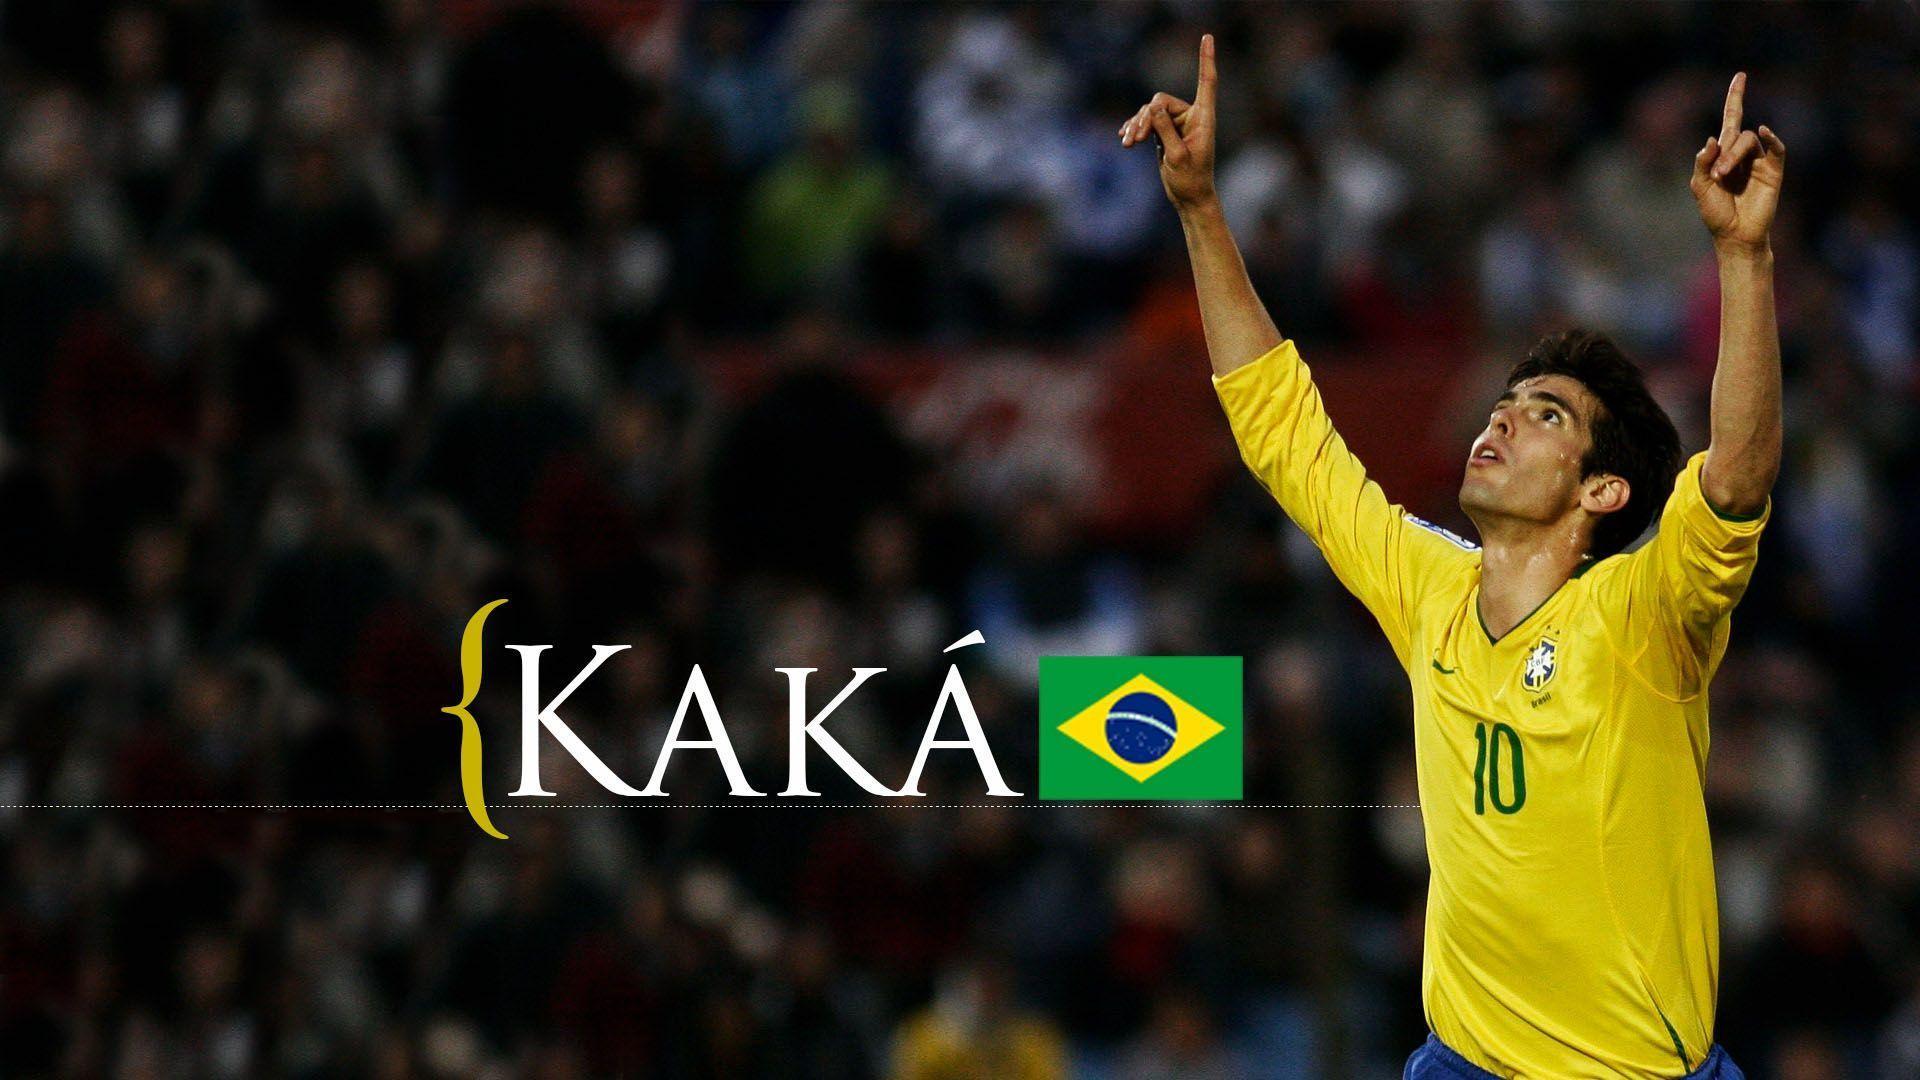 New Kaka Football Player Brazil Wallpaper, Free Widescreen HD